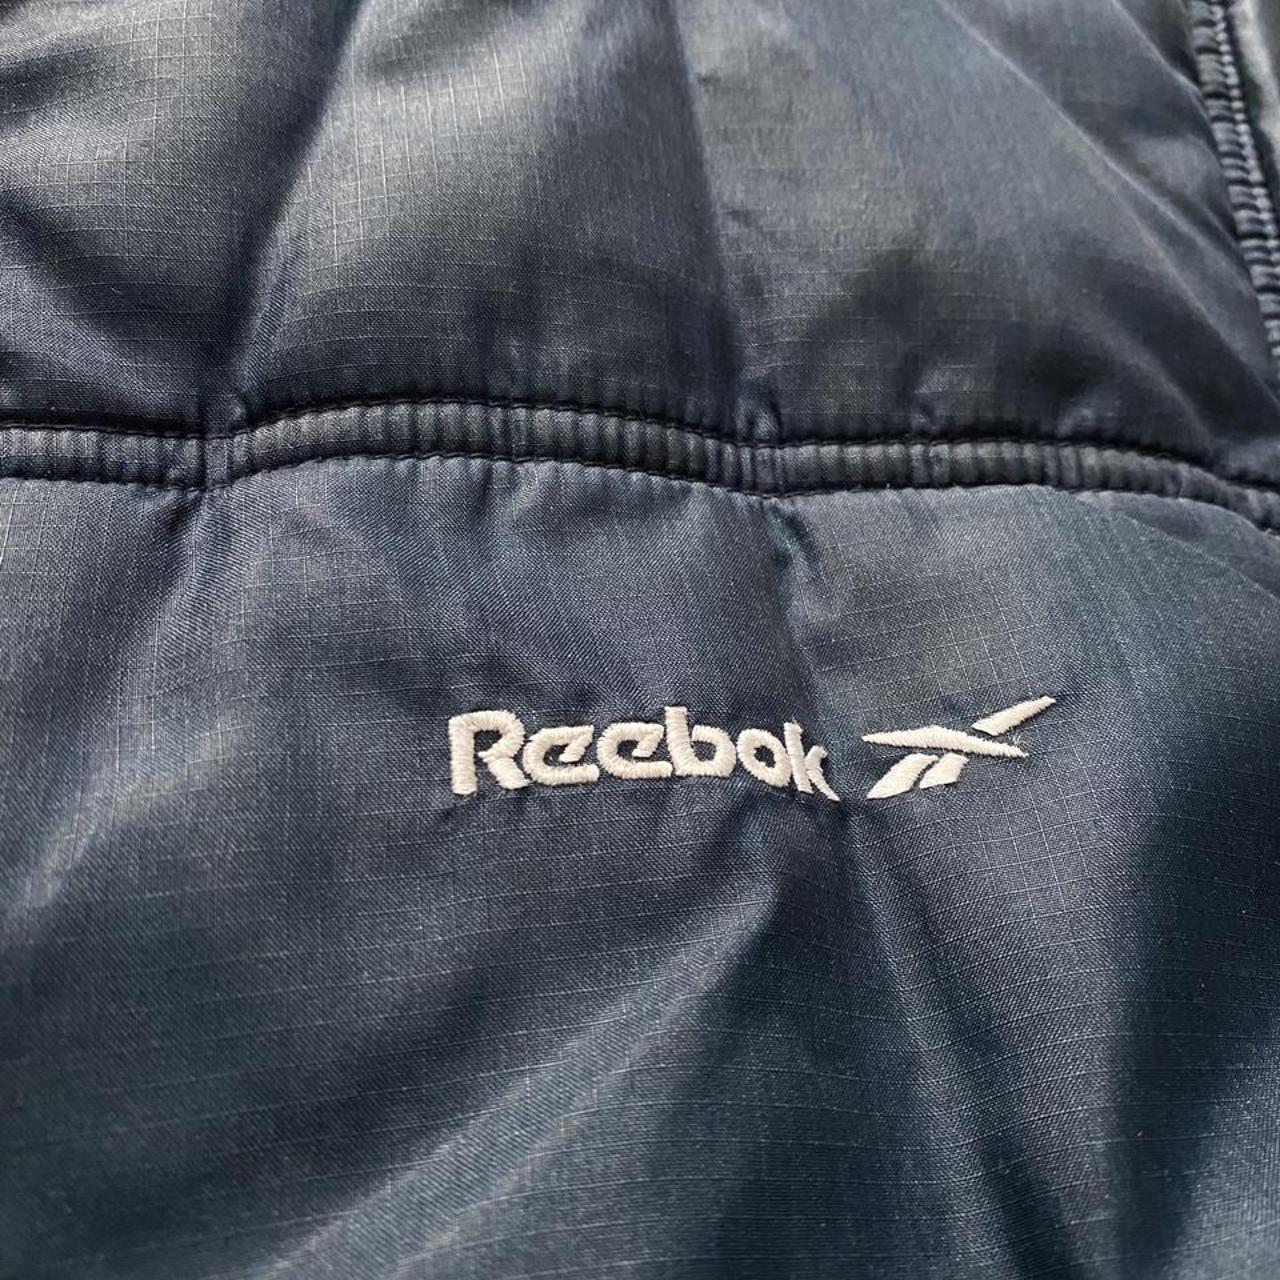 Fantastic Vintage 90s Reebok Puffer jacket. This... - Depop